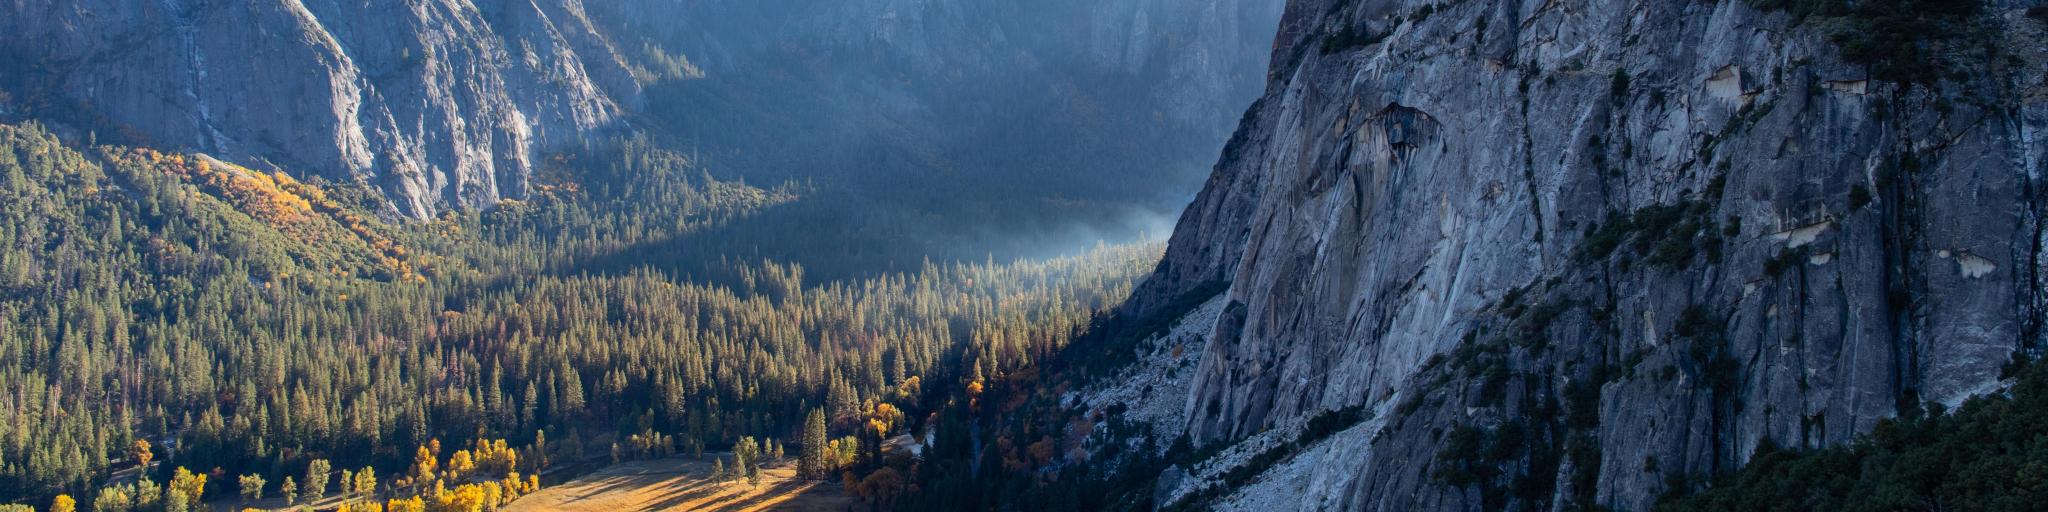 Panoramic views of Yosemite Valley and surrounding peaks from Columbia Rock, Yosemite